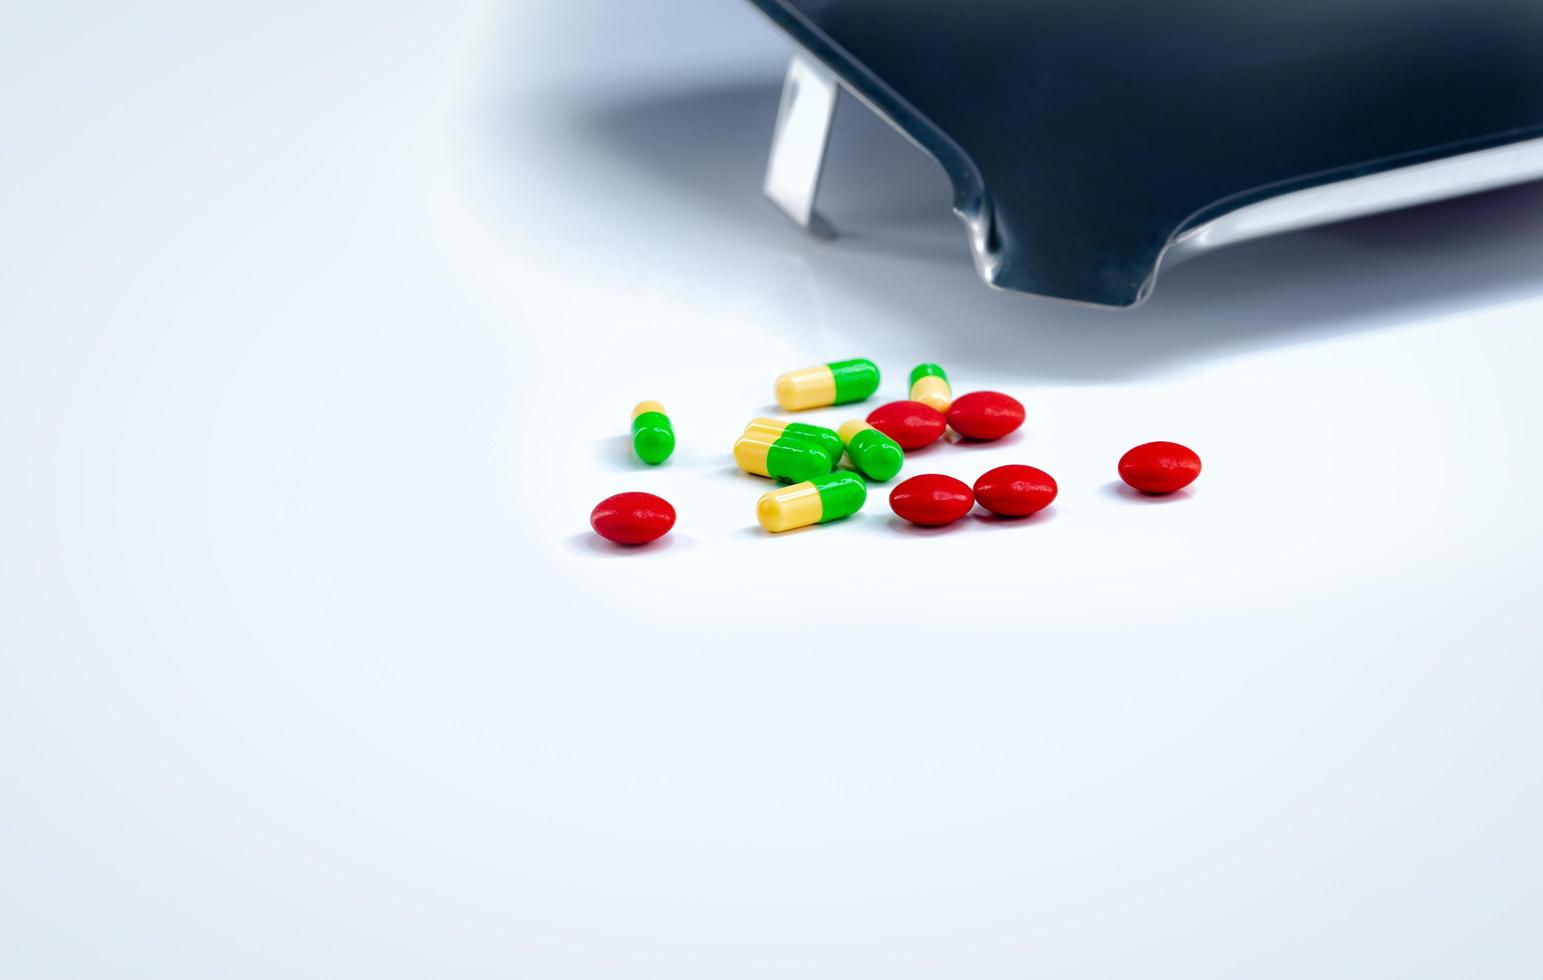 rode tabletten en groen-gele capsules pillen met medicijnbakje op witte tafel. farmaceutische industrie. vitamines en supplementen. farmaceutisch concept. apotheek producten. gezondheidszorg en medicatie. foto